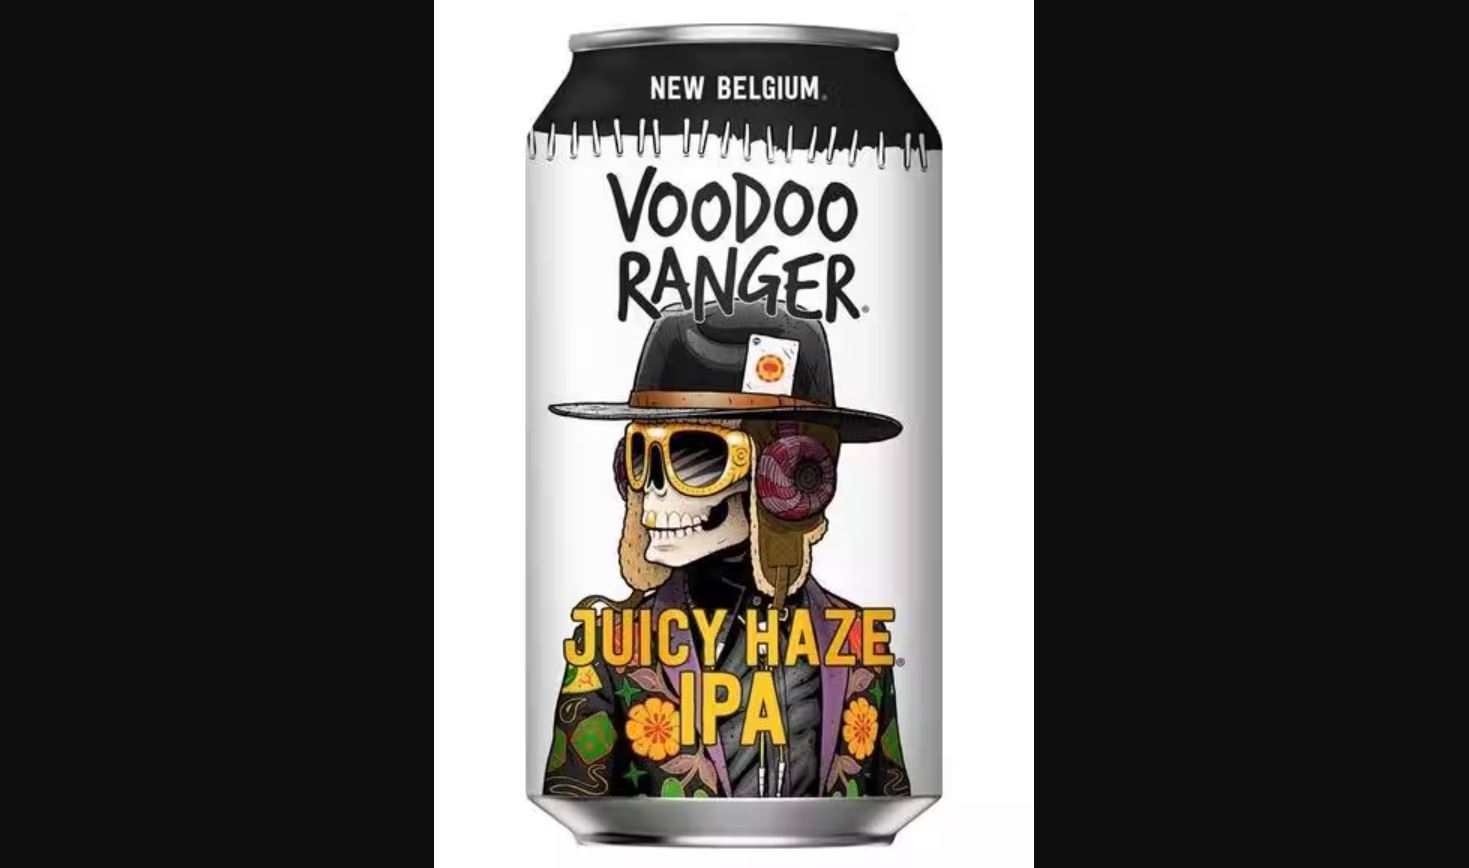 New Belgium Voodoo Ranger Juicy Haze